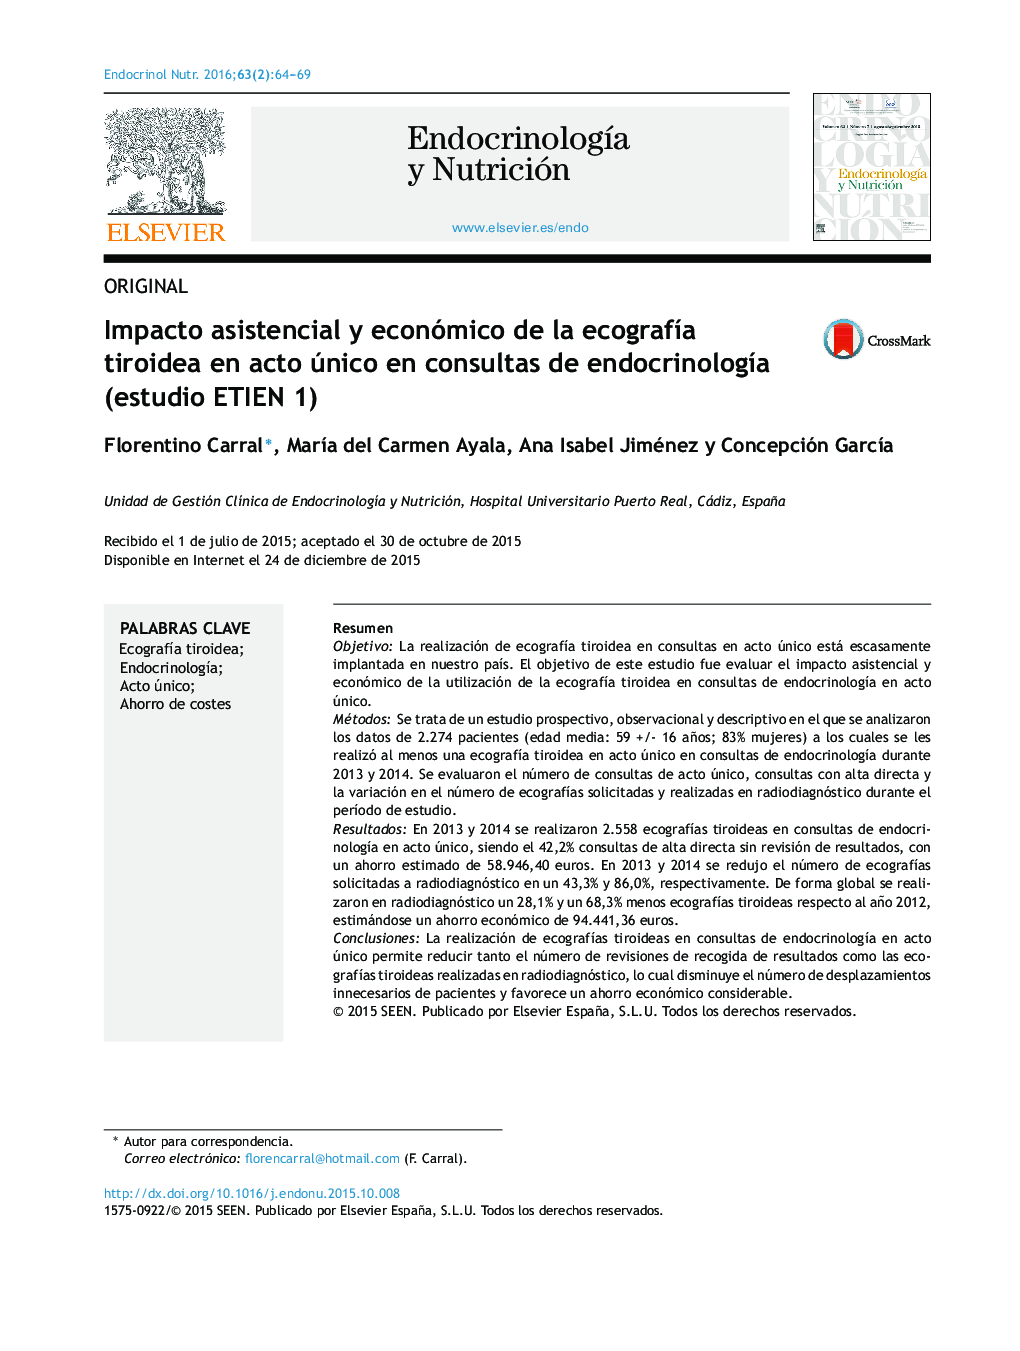 Impacto asistencial y económico de la ecografÃ­a tiroidea en acto único en consultas de endocrinologÃ­a (estudio ETIEN 1)